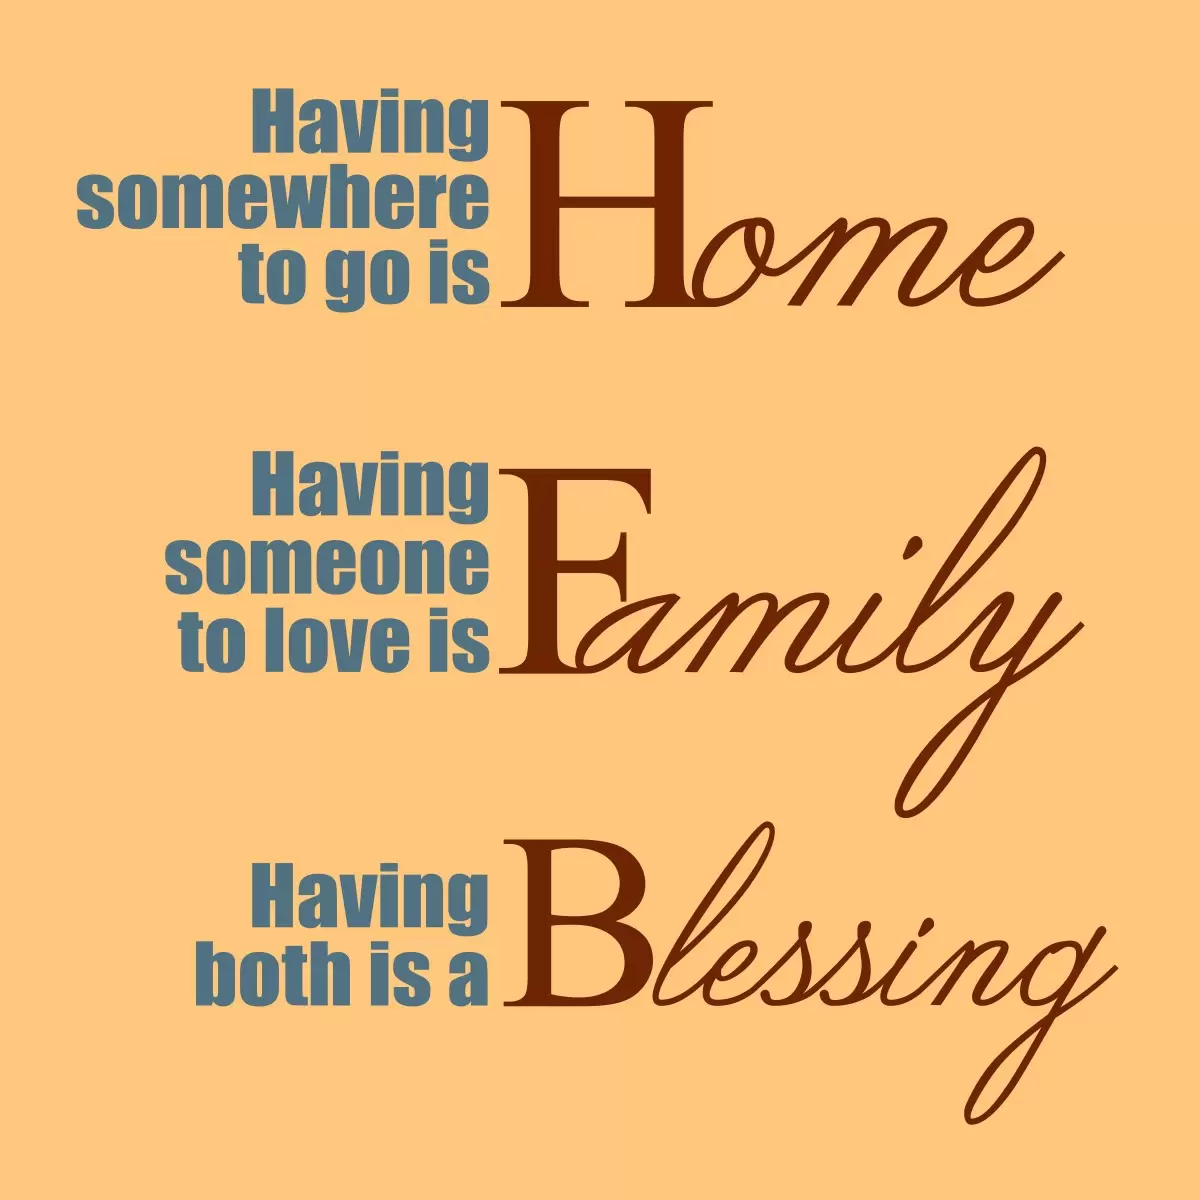 Home Family Blessing - מסגרת עיצובים - מדבקות קיר משפטי השראה טיפוגרפיה דקורטיבית  - מק''ט: 240396